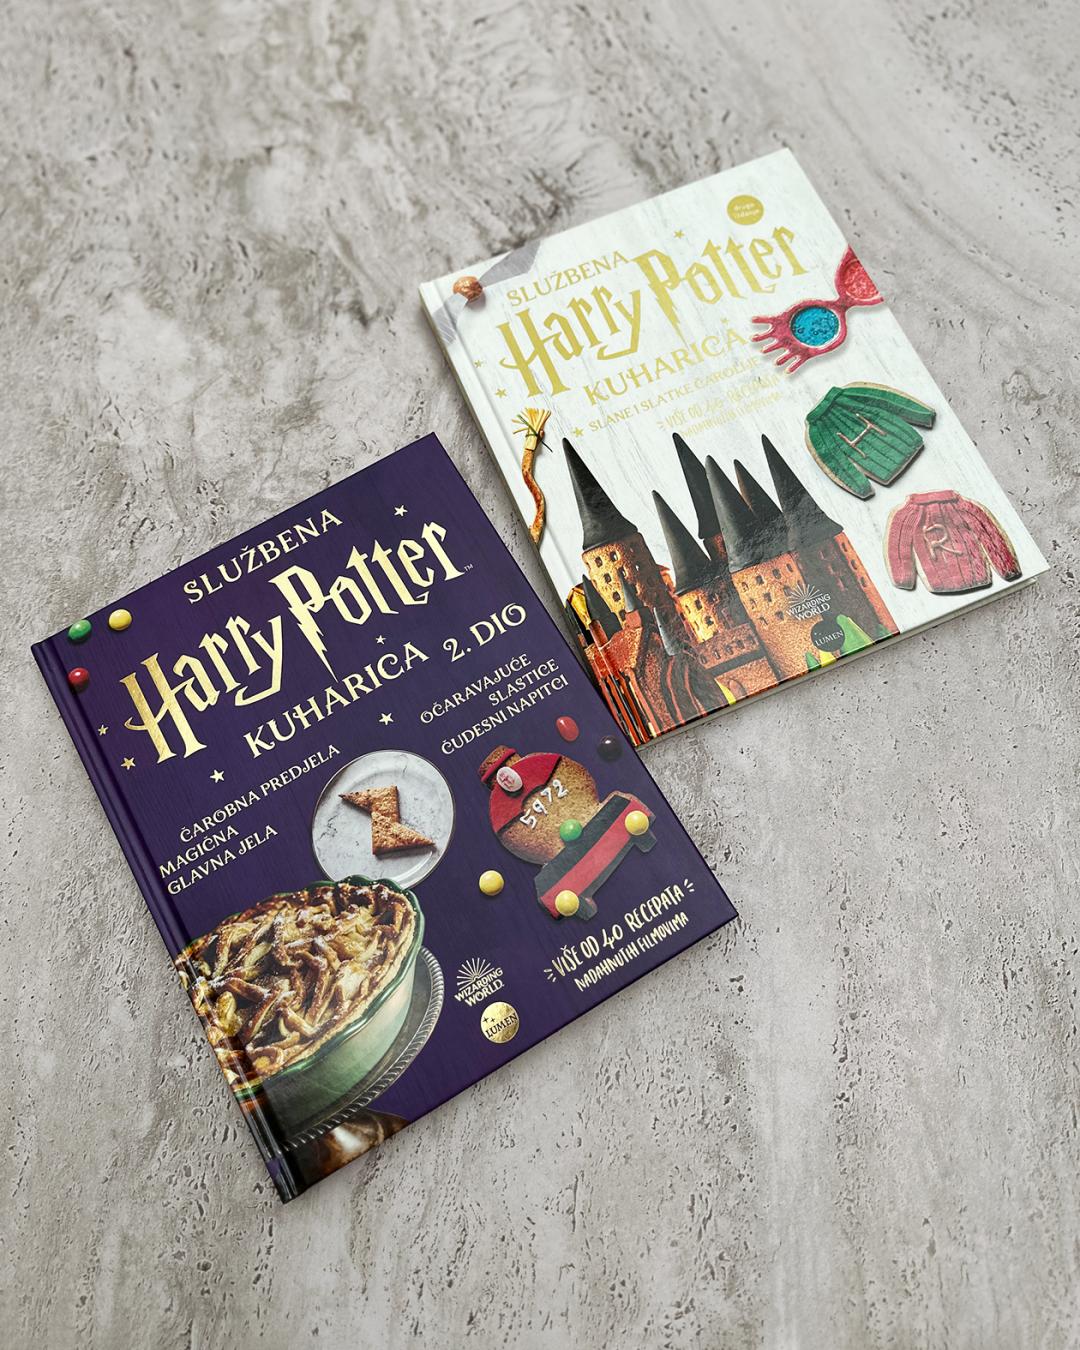 U knjižare je stigao drugi dio Službene Harry Potter kuharice